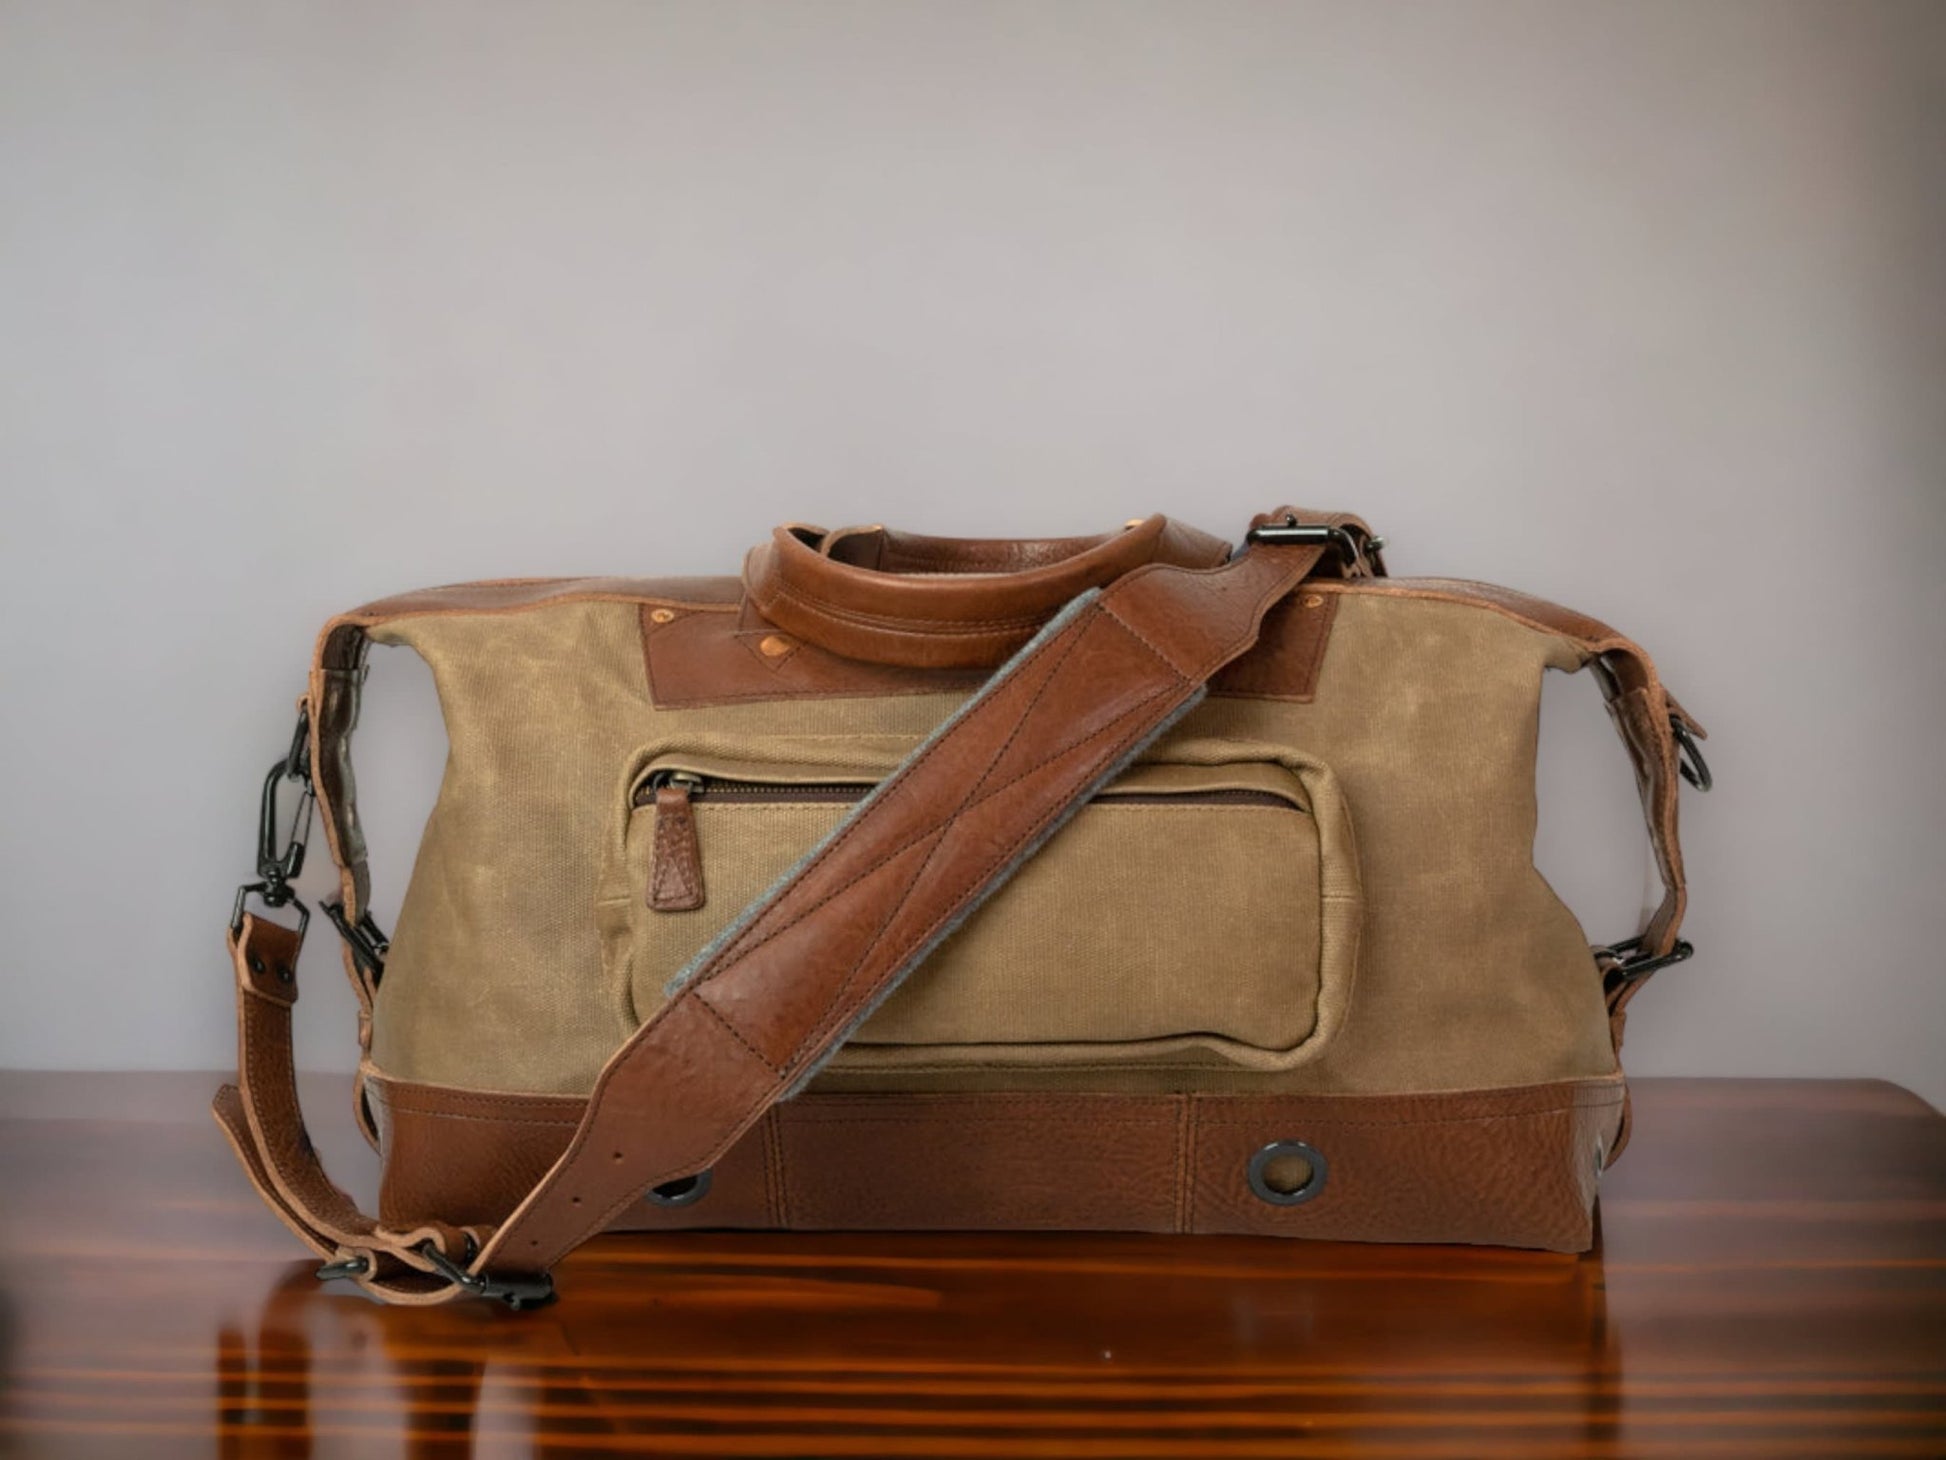 Leather Duffle Bag - Men's Brown Weekender Bag from Satchel